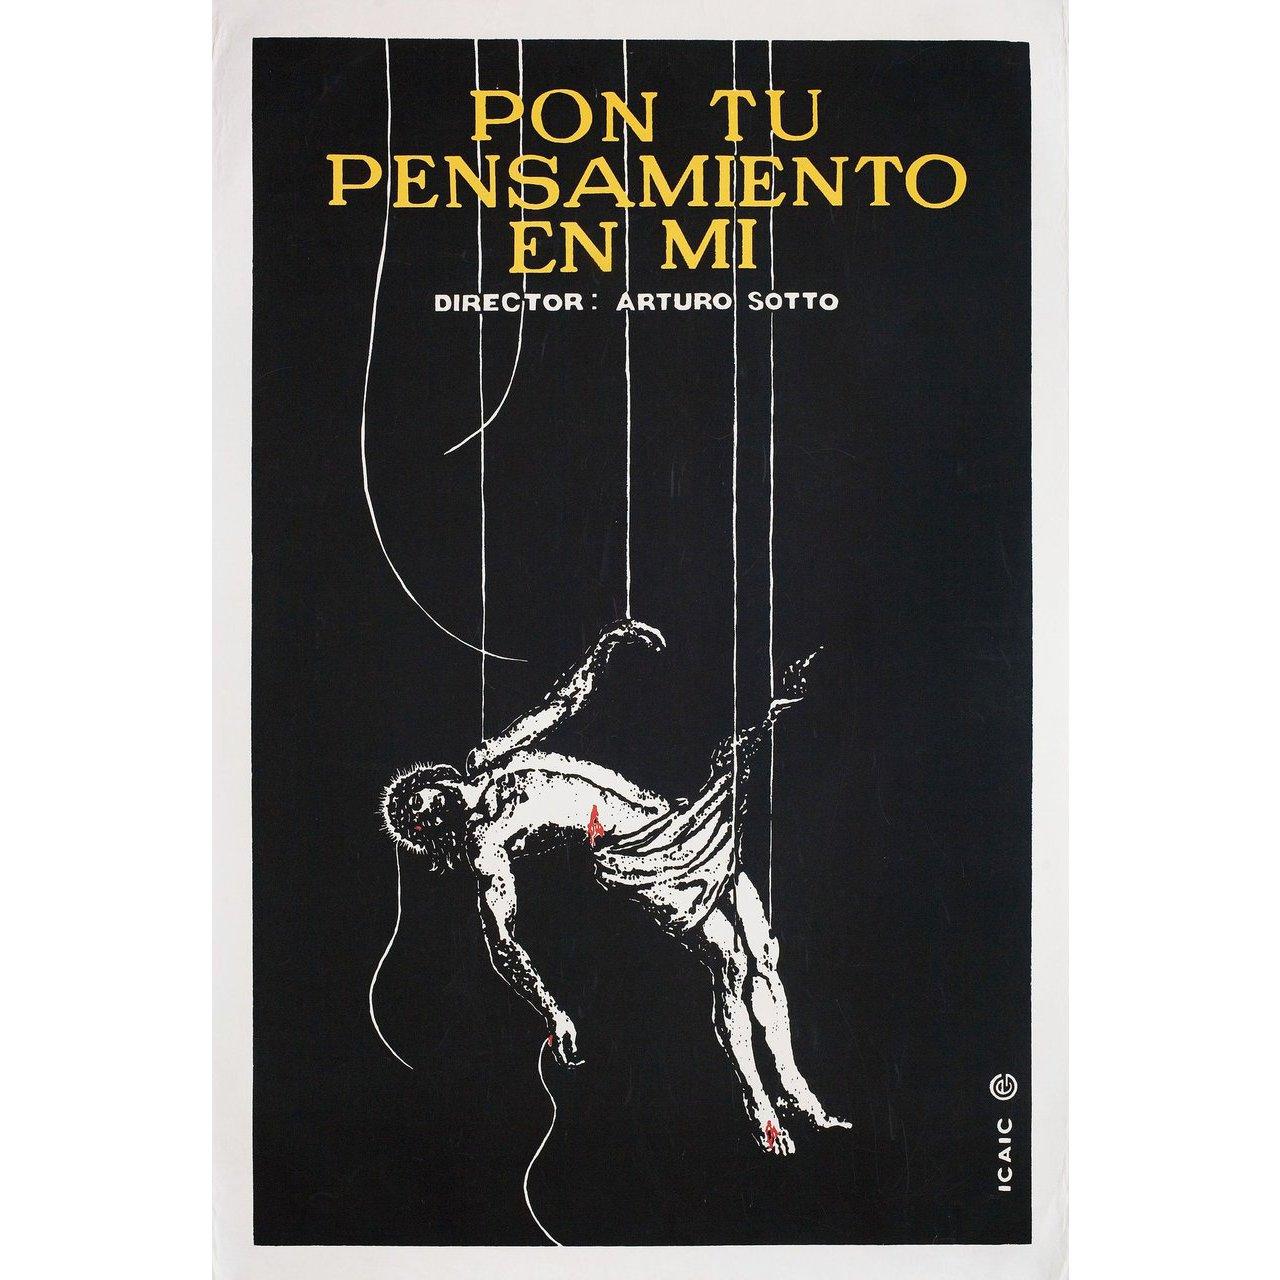 Originales kubanisches Plakat von 1996 für den Film 